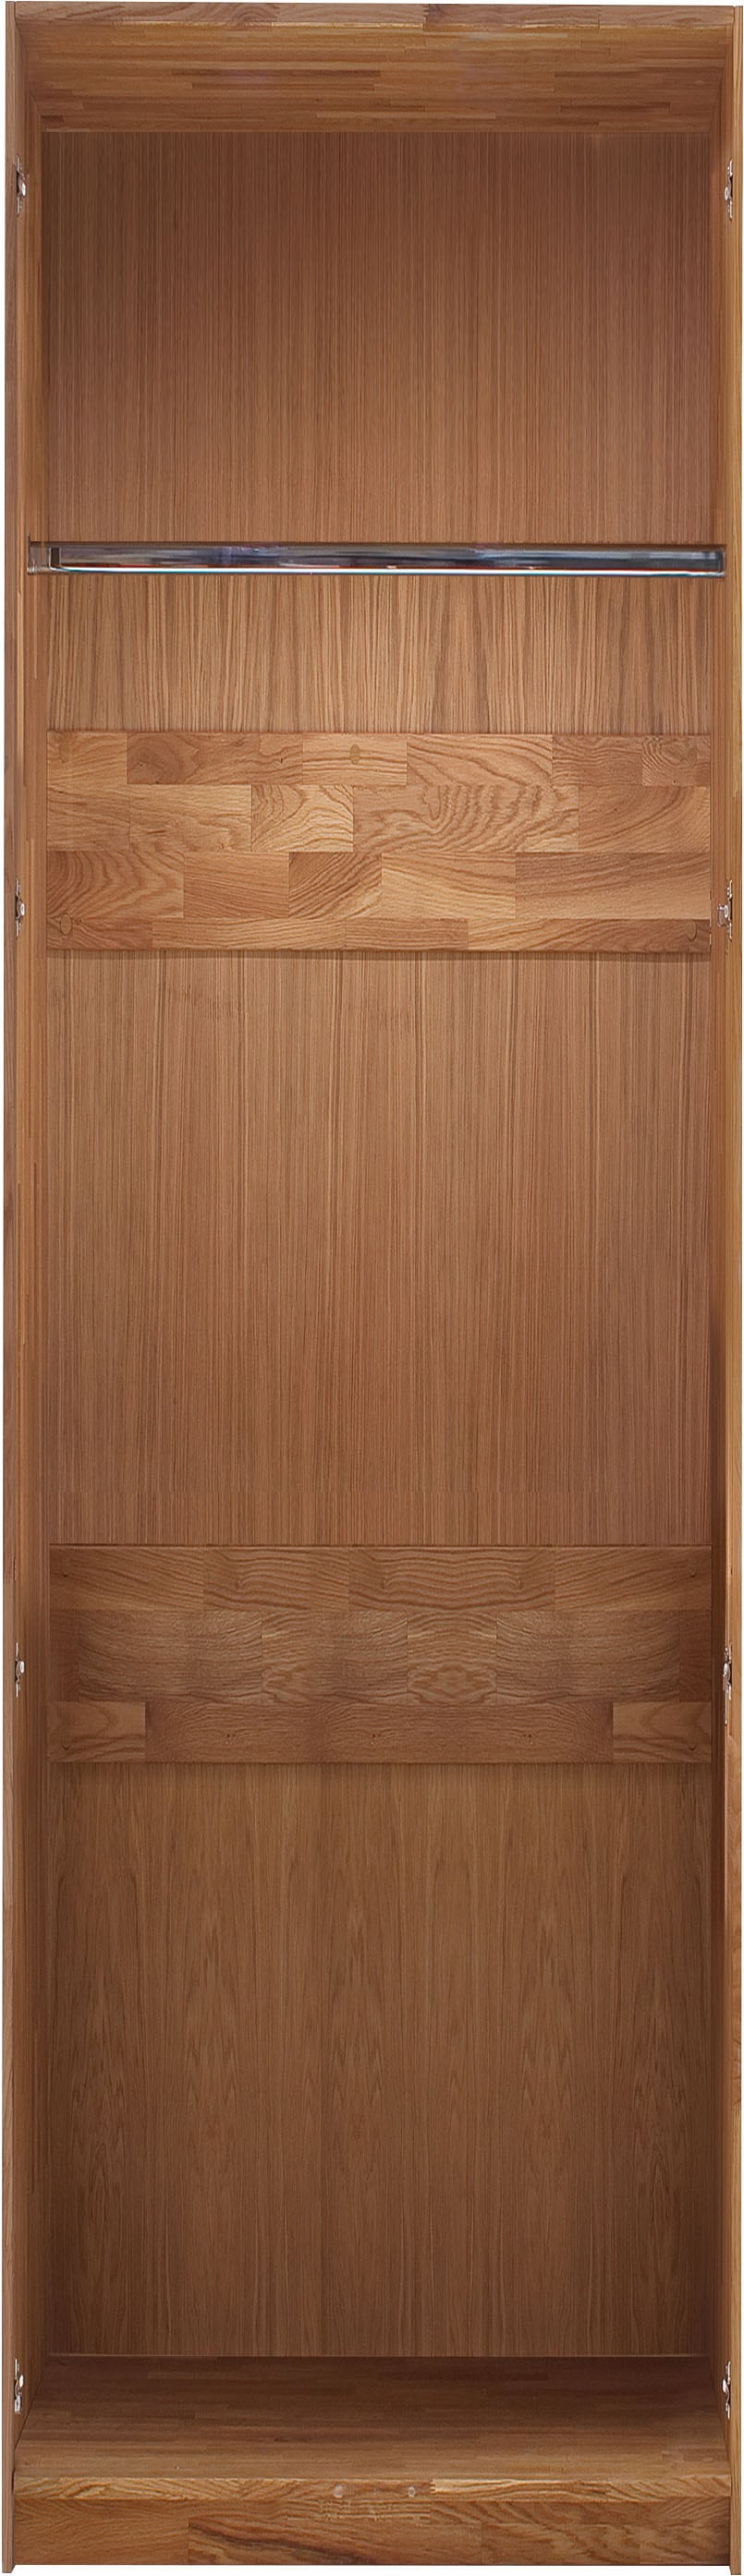 Home affaire Drehtürenschrank »Chamara«, aus massivem Eichenholz, in unterschiedlichen Breiten, Höhe 218 cm